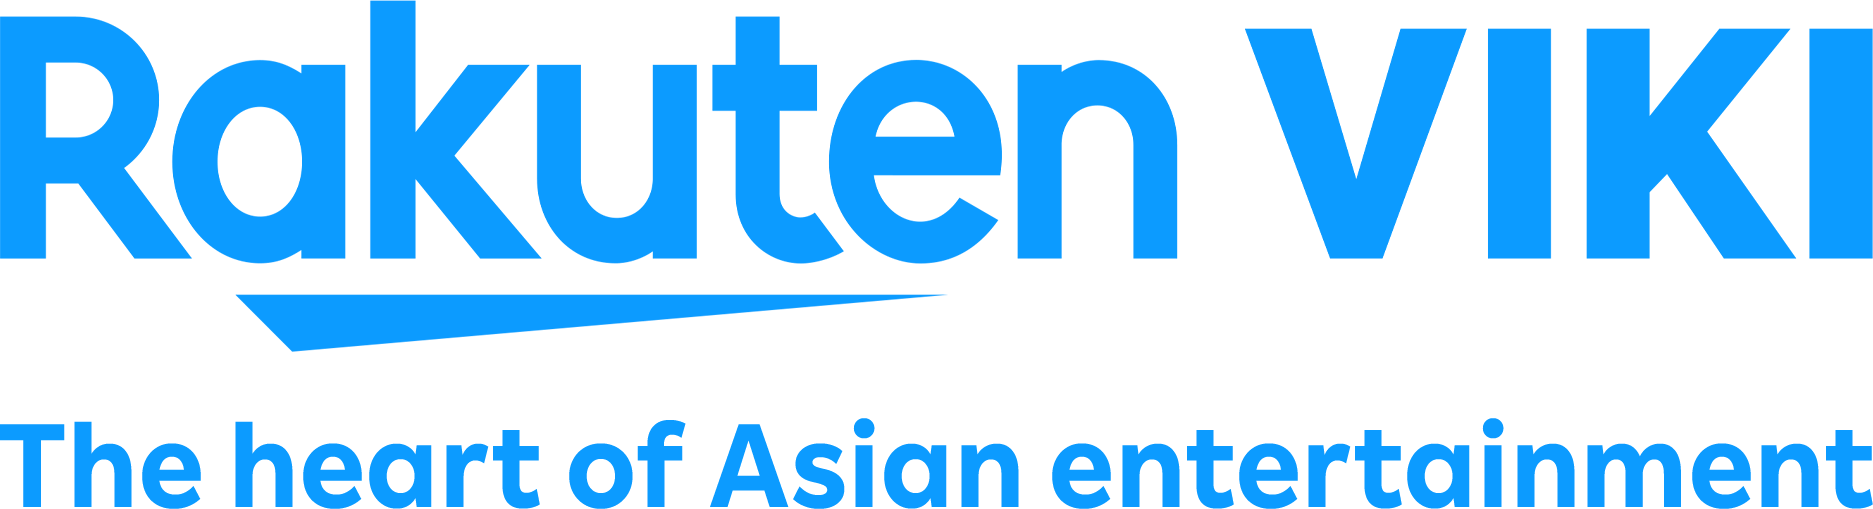 Rakuten Viki - The heart of Asian entertainment